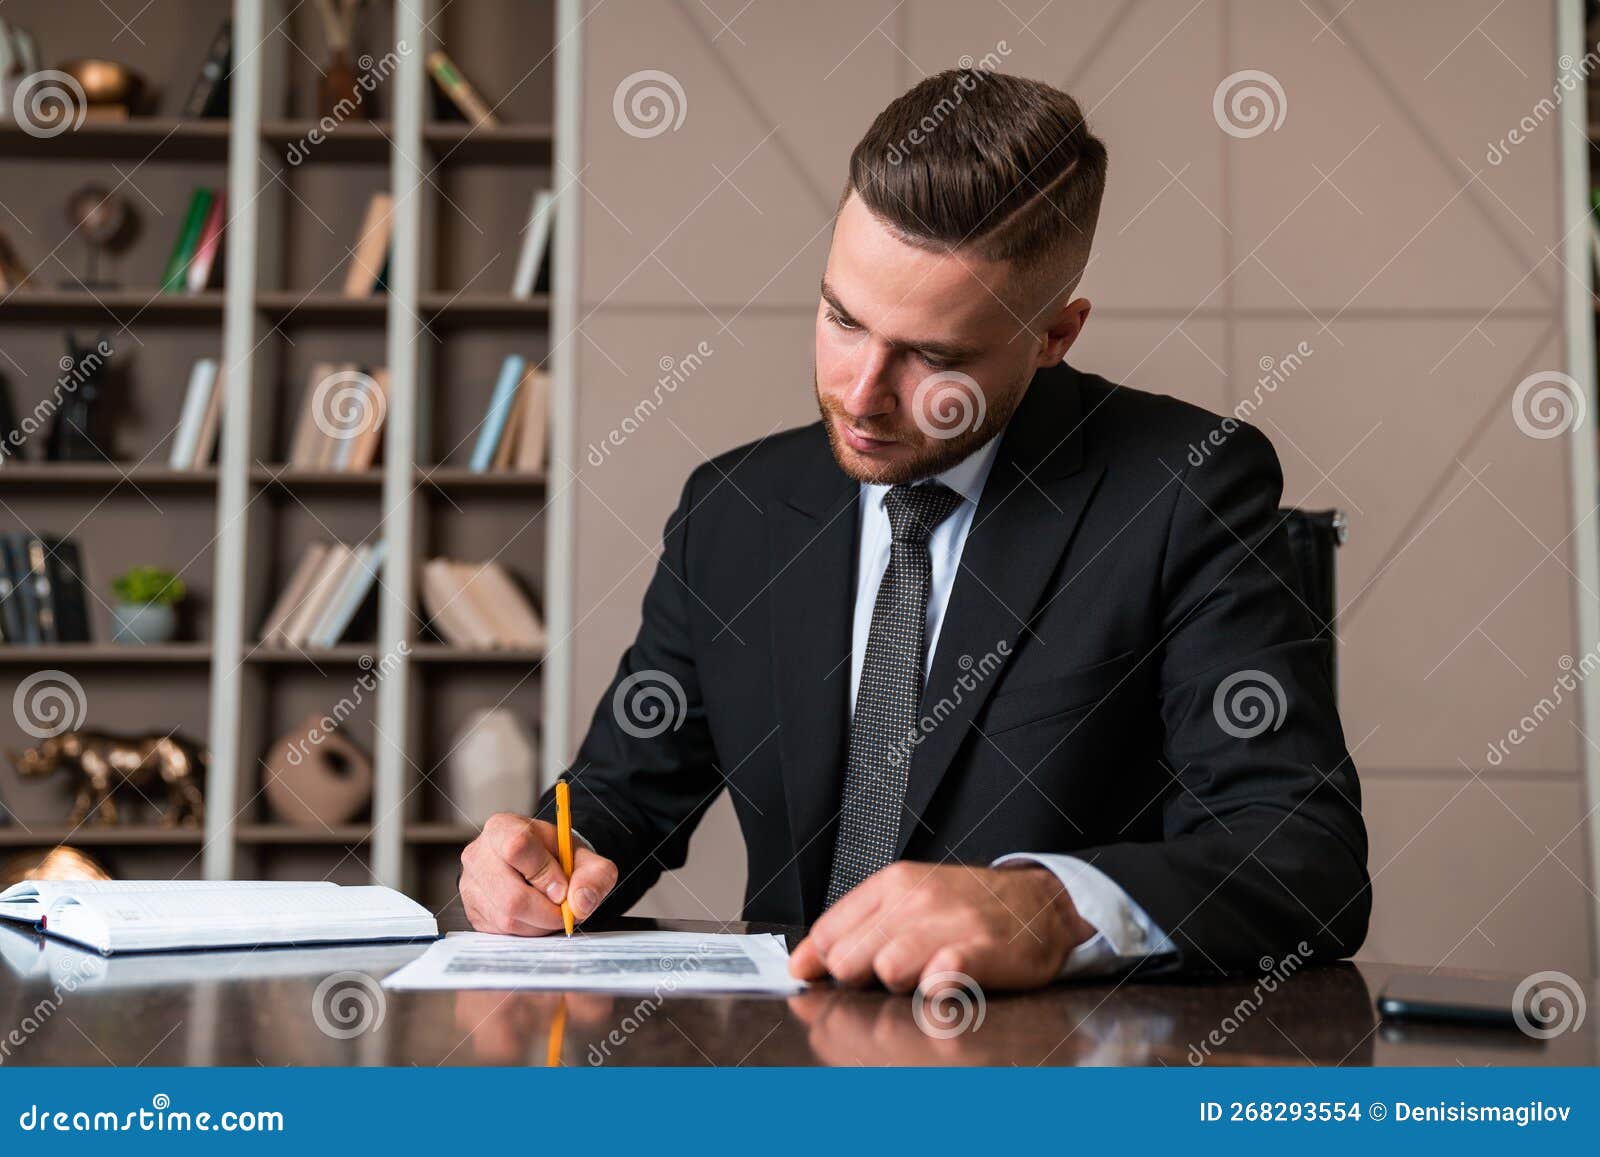 Homme D'affaires à La Main Signant Un Contrat Homme D'affaires D